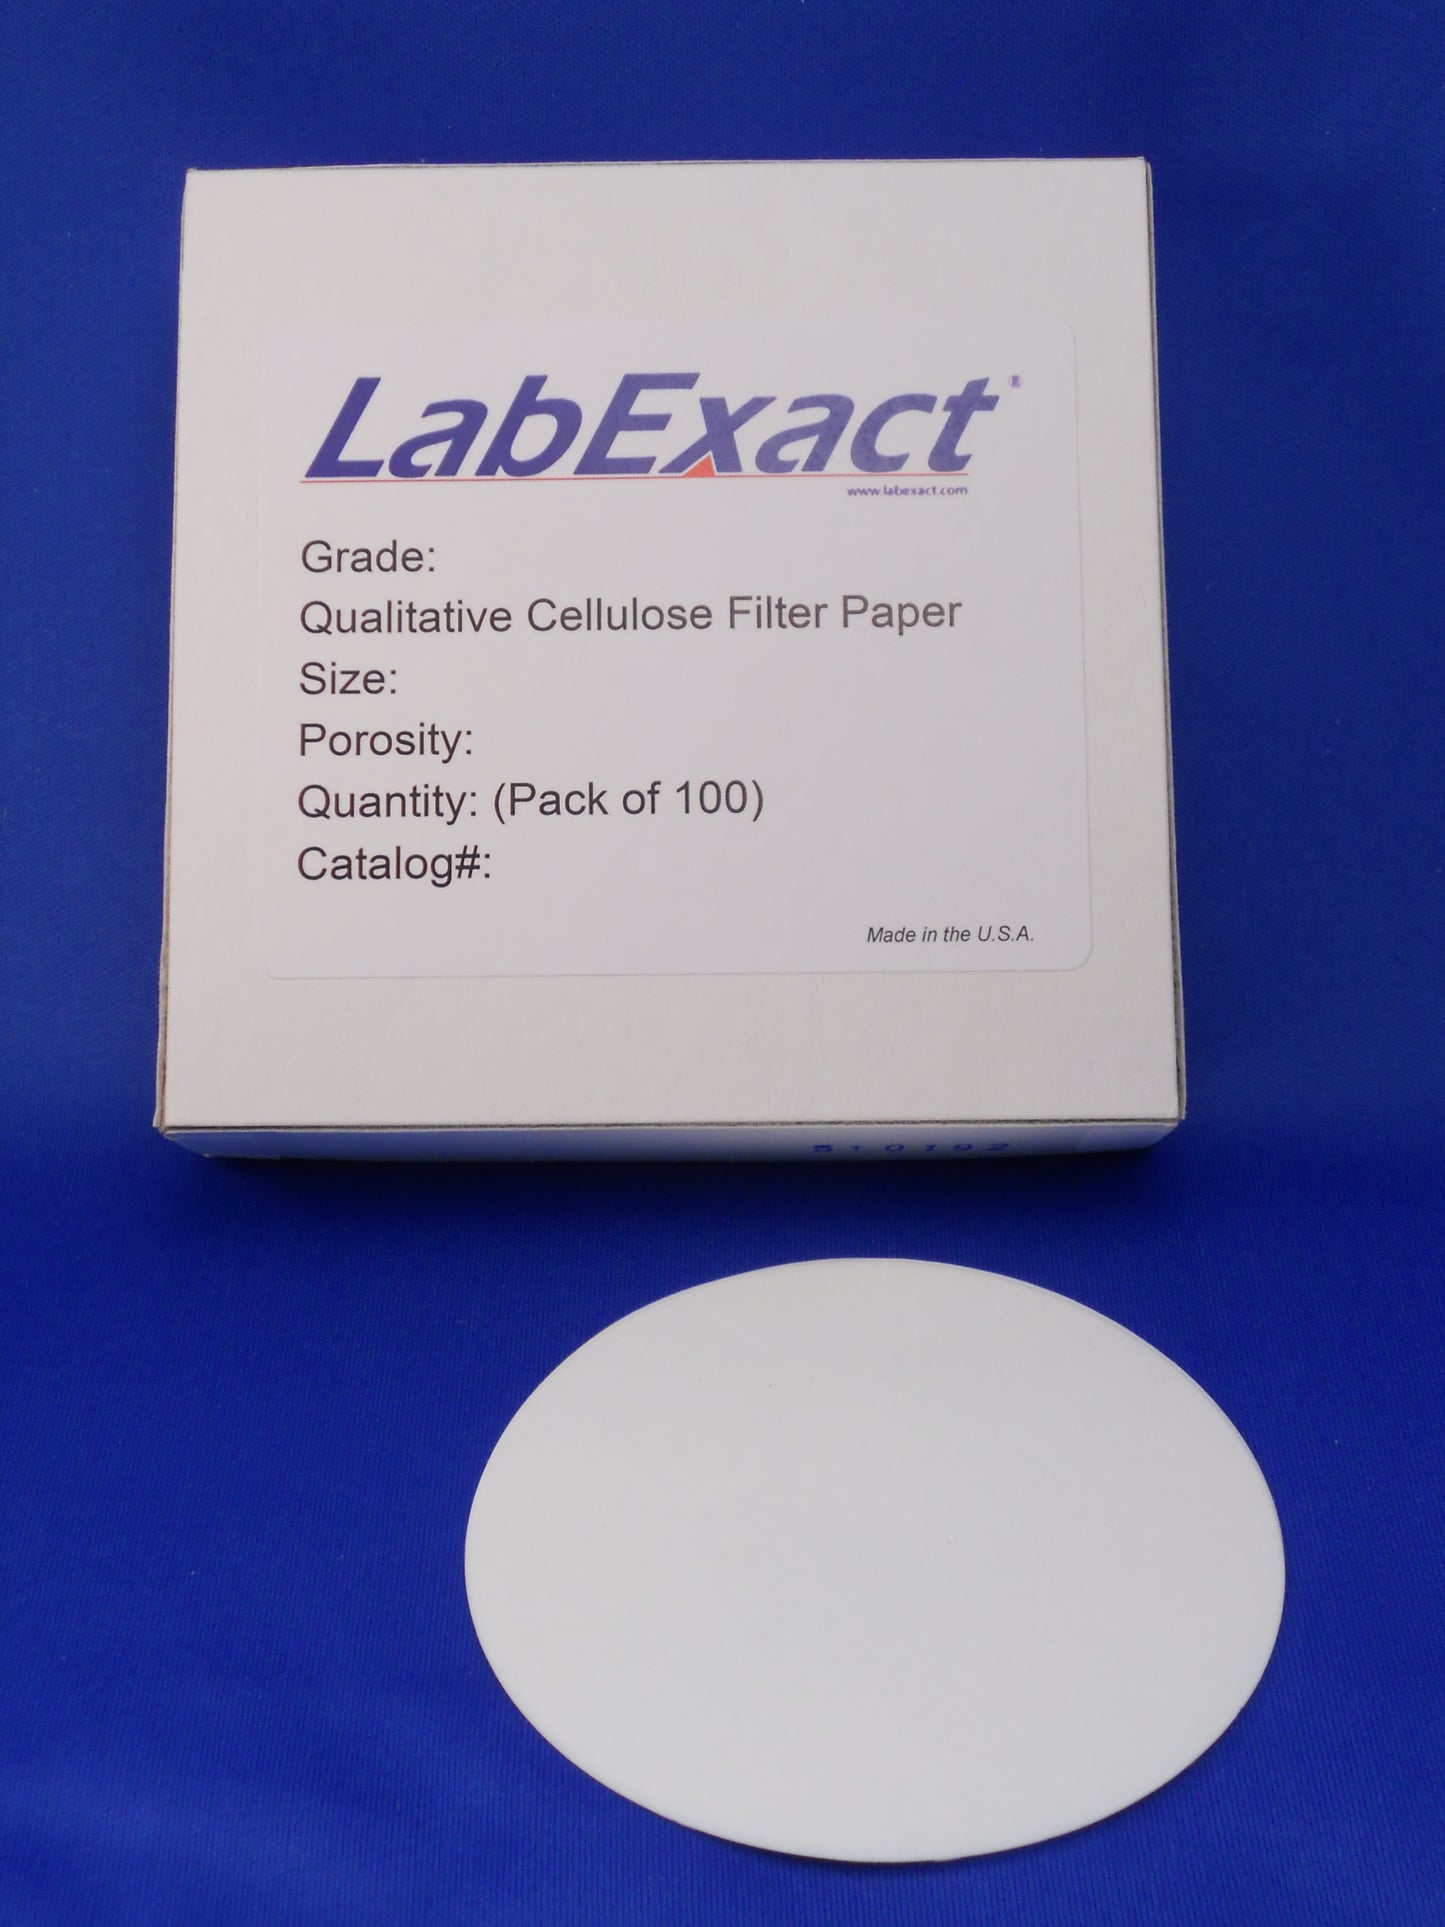 Grade CFP1 Qualitative cellulose filter paper, 11µm retention, medium flow